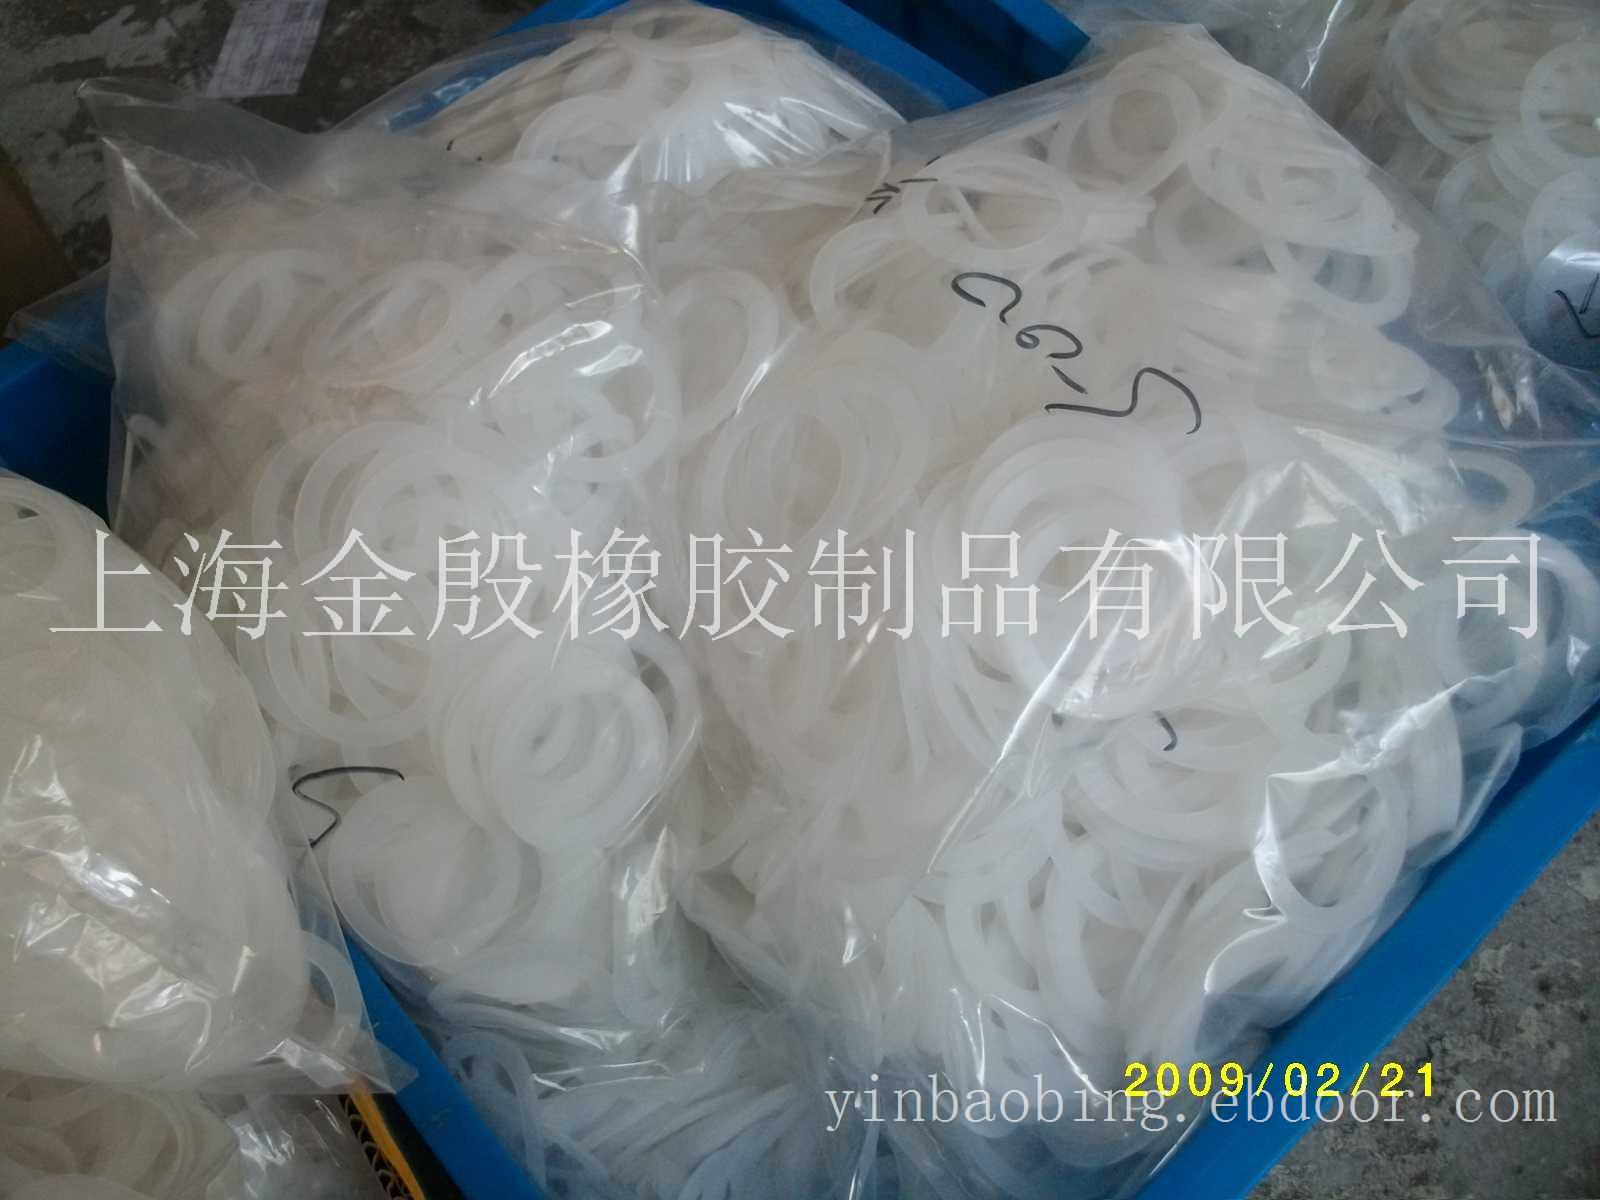 组培瓶硅胶垫_上海硅胶垫公司_上海硅胶垫专卖